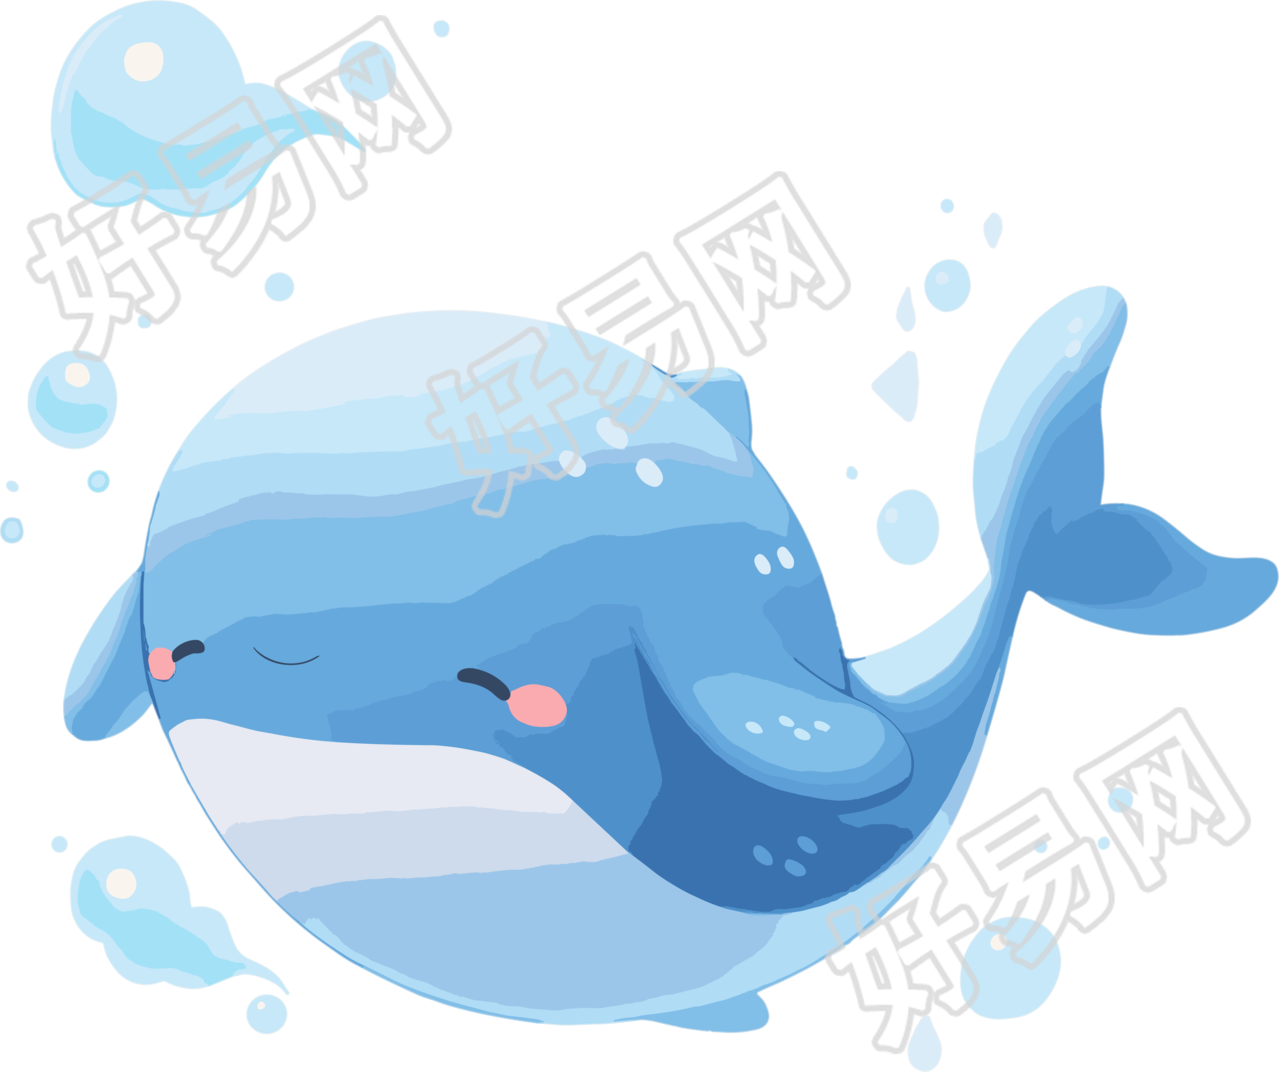 鲸鱼透明背景插画